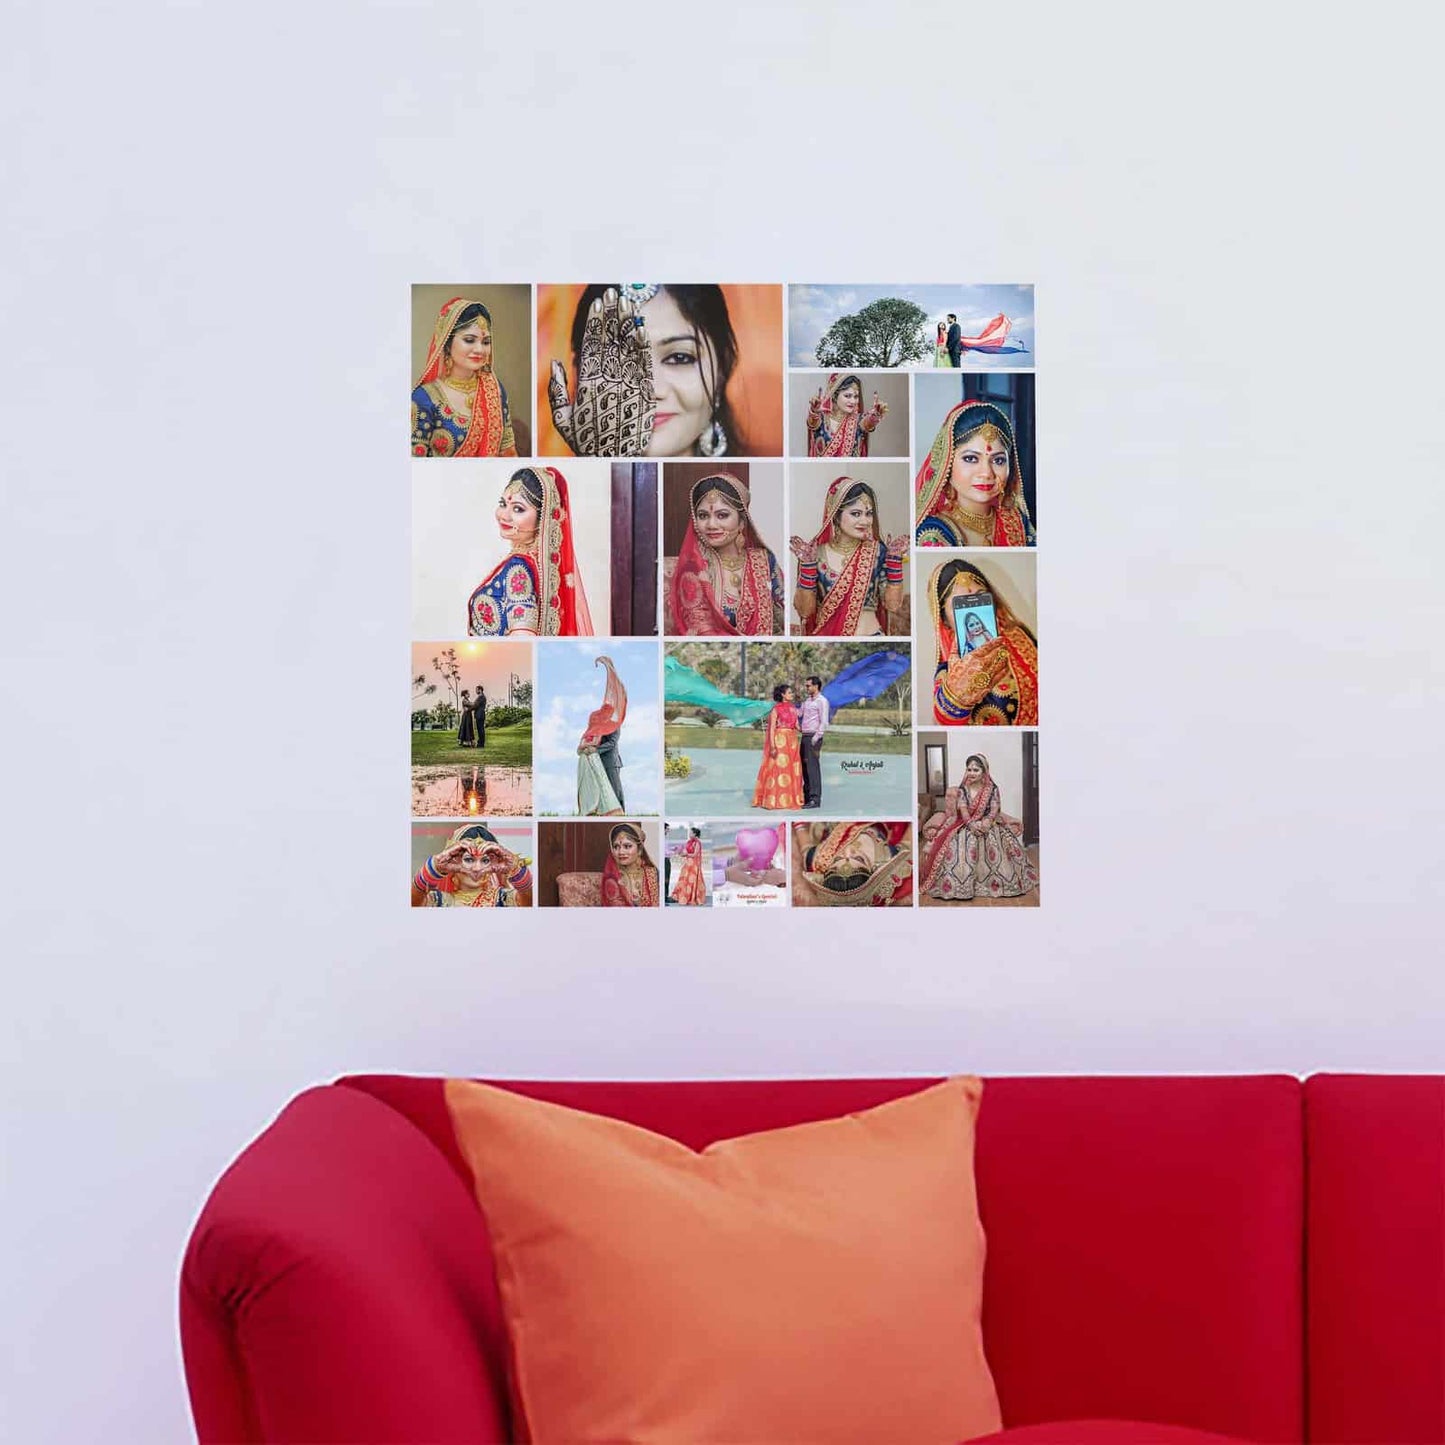 Album Collage Wall Design